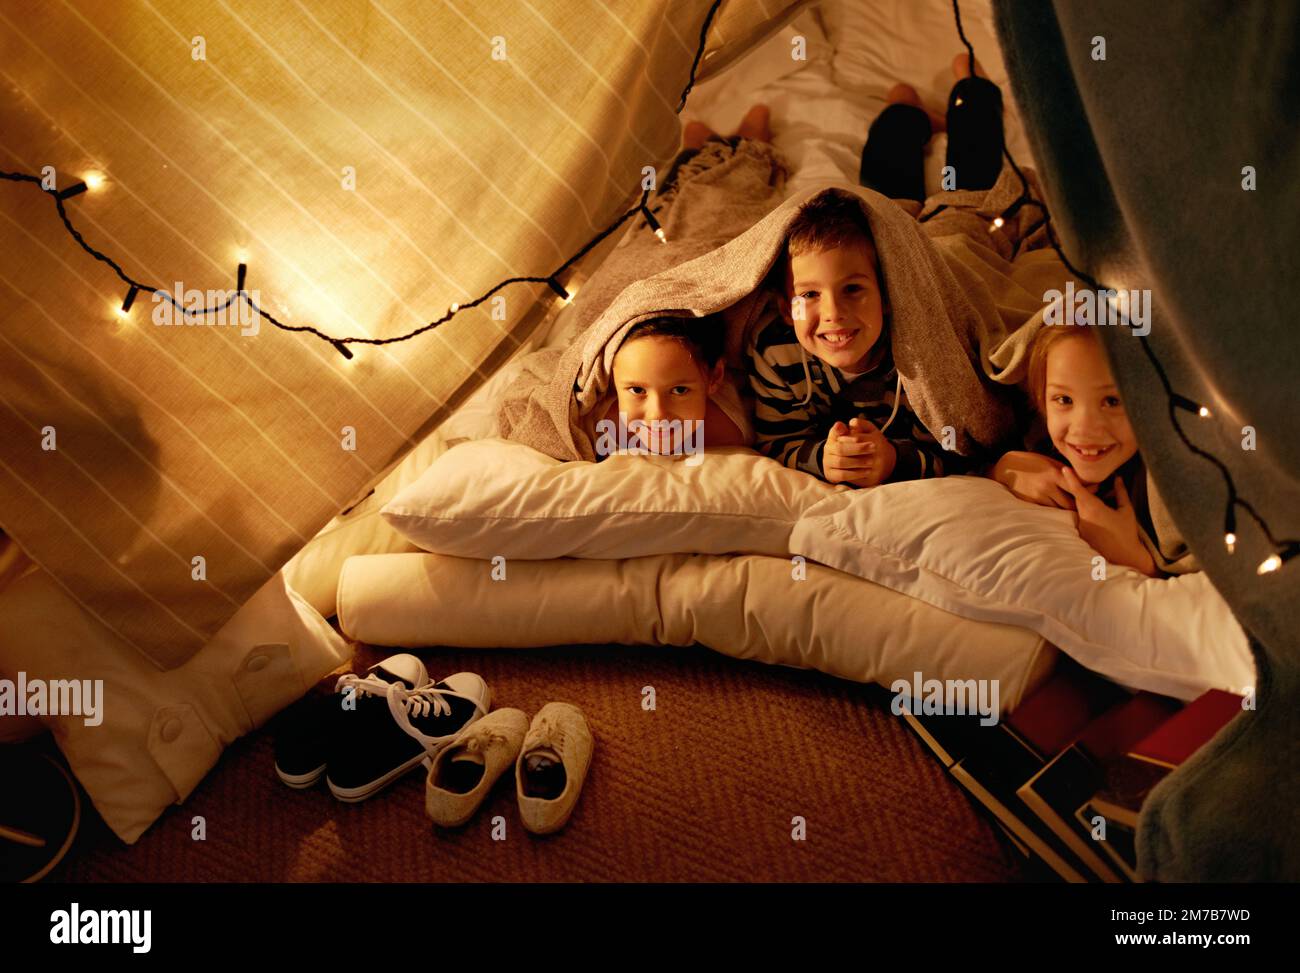 Wir haben eine aktive Fantasie. Drei kleine Kinder, die zusammen in einem Zelt spielen. Stockfoto